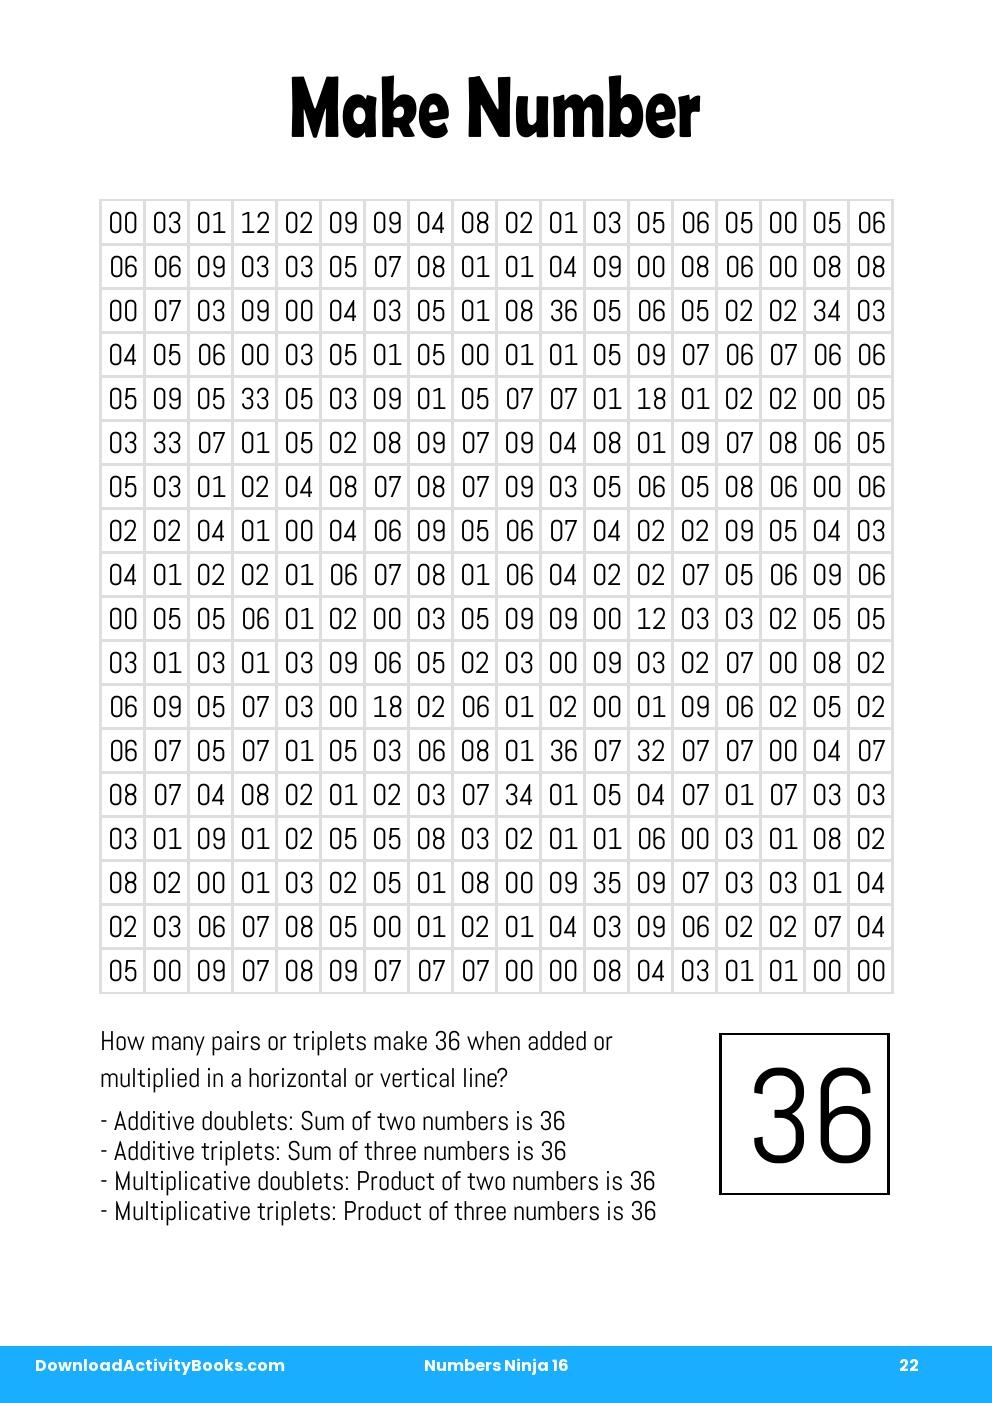 Make Number in Numbers Ninja 16